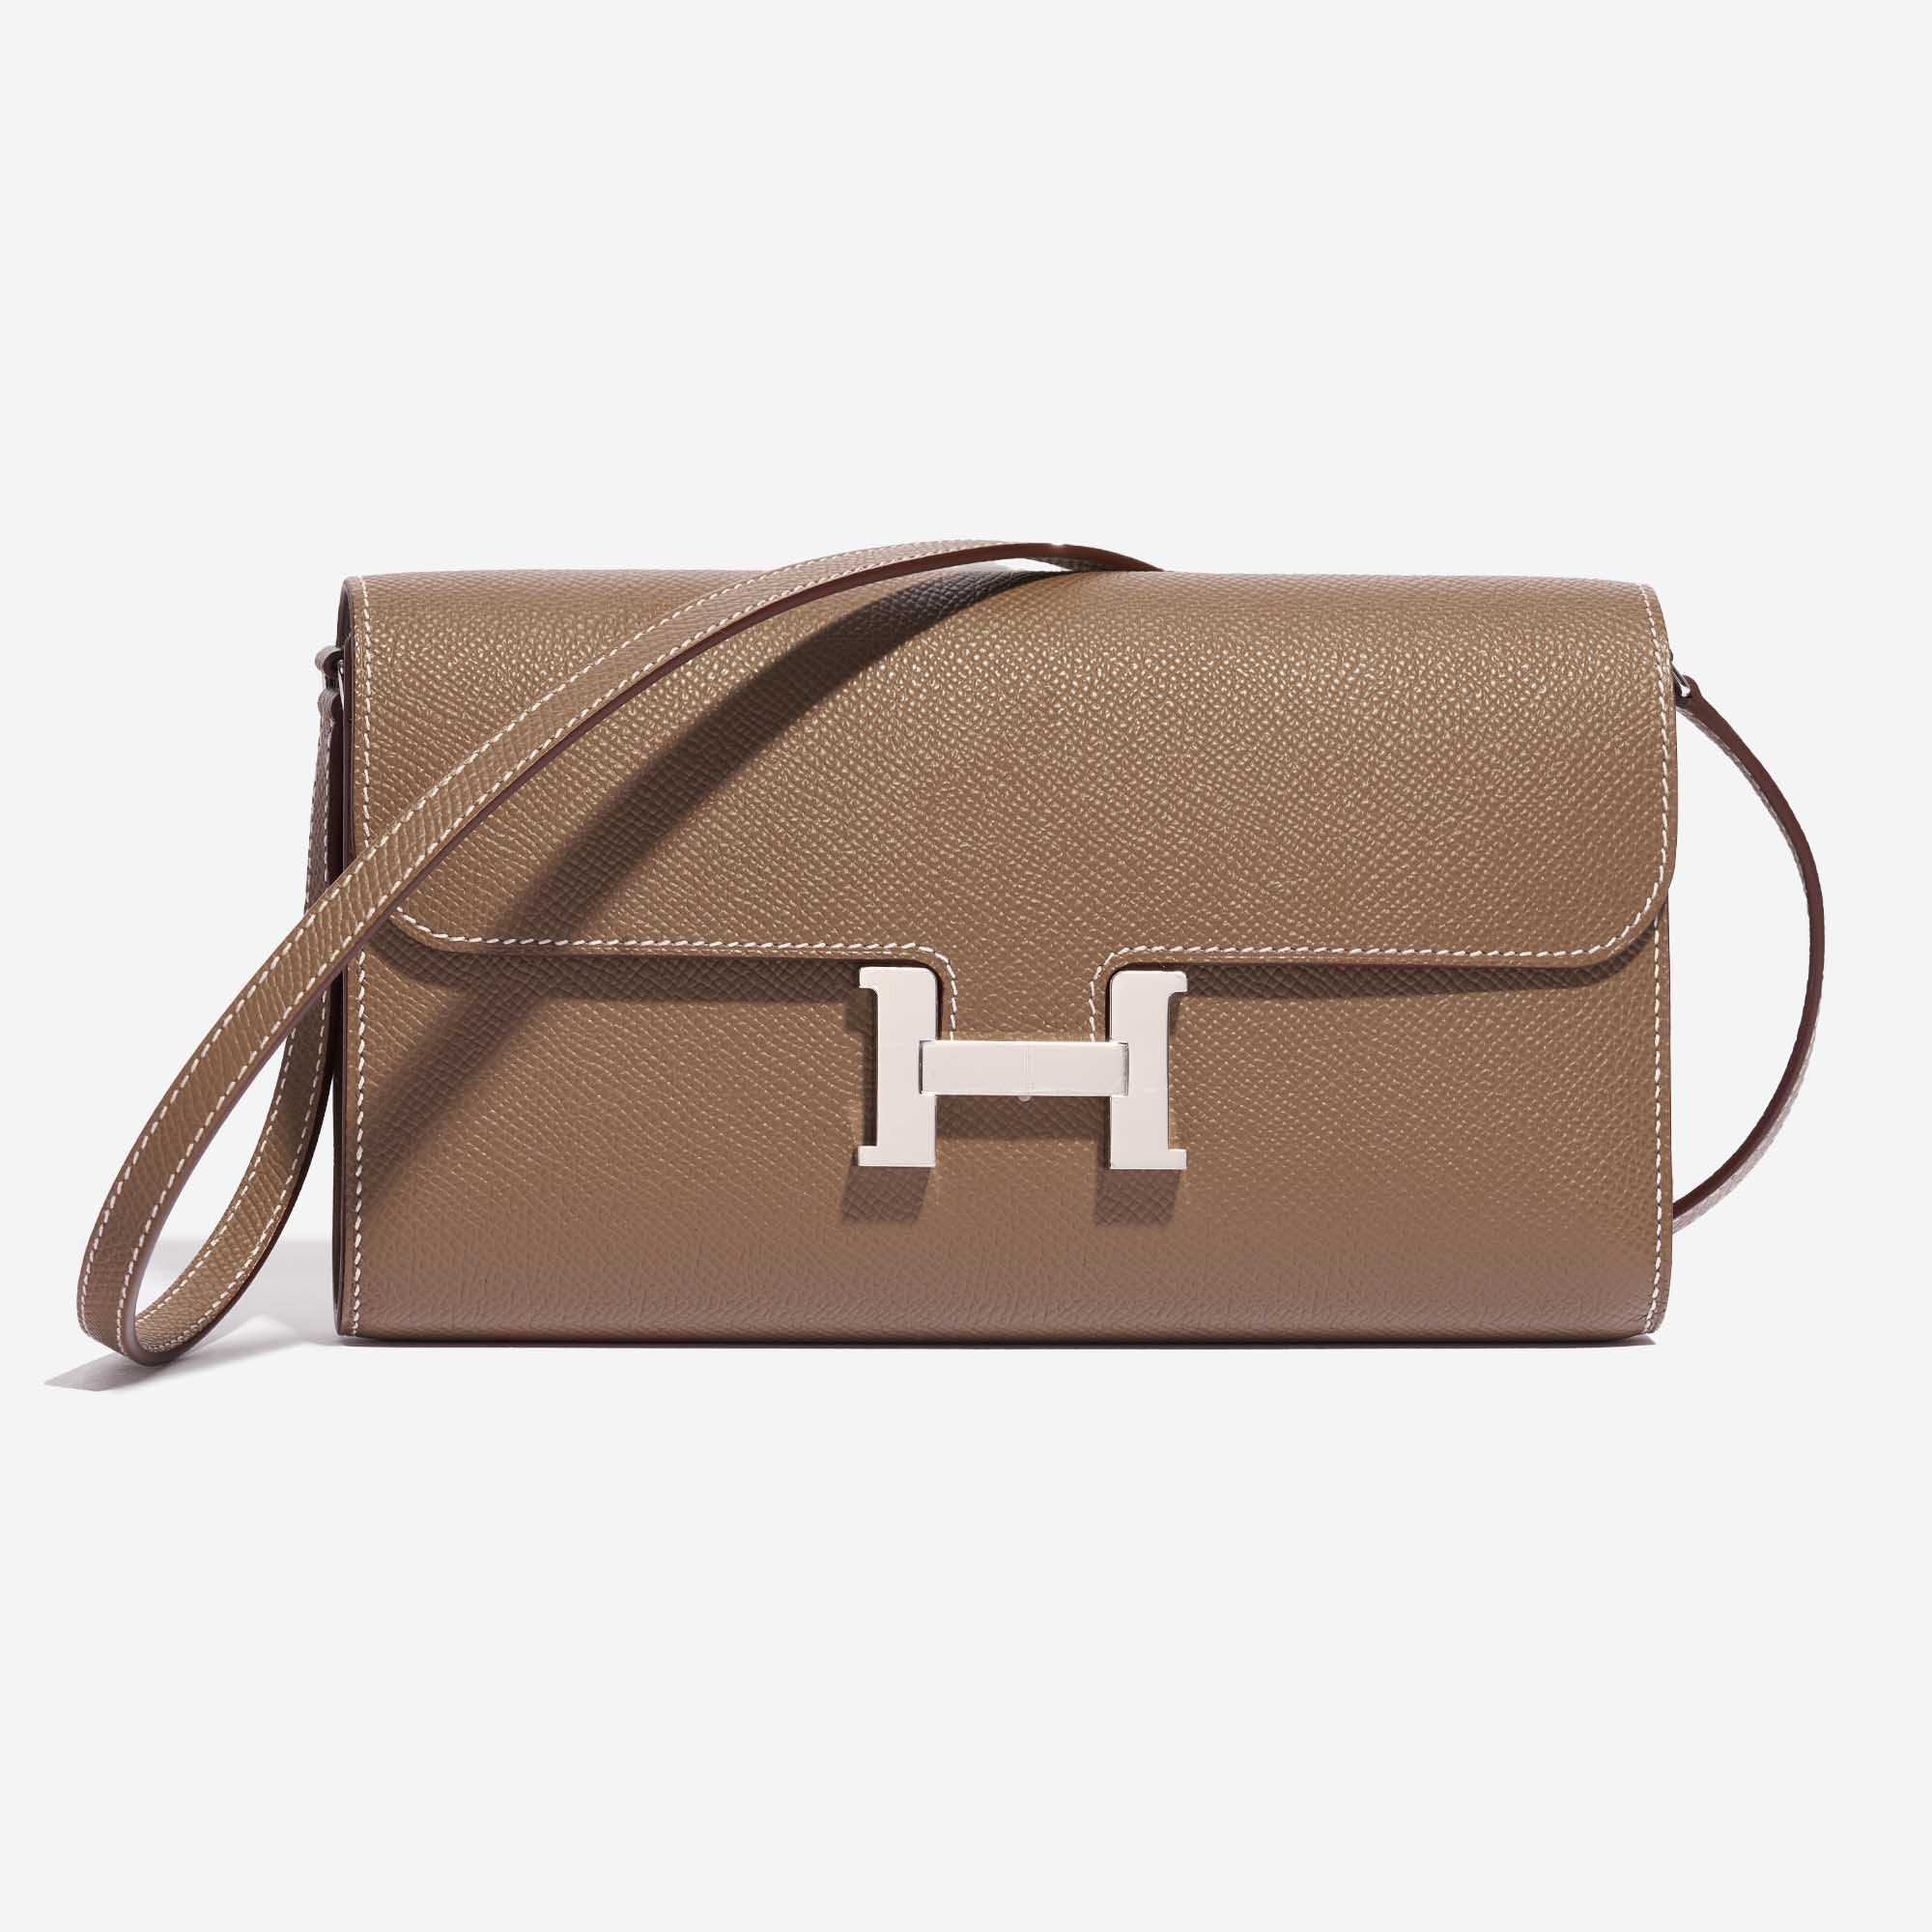 Pre-owned Hermès Tasche Constance To Go Epsom Etoupe Brown Front | Verkaufen Sie Ihre Designer-Tasche auf Saclab.com